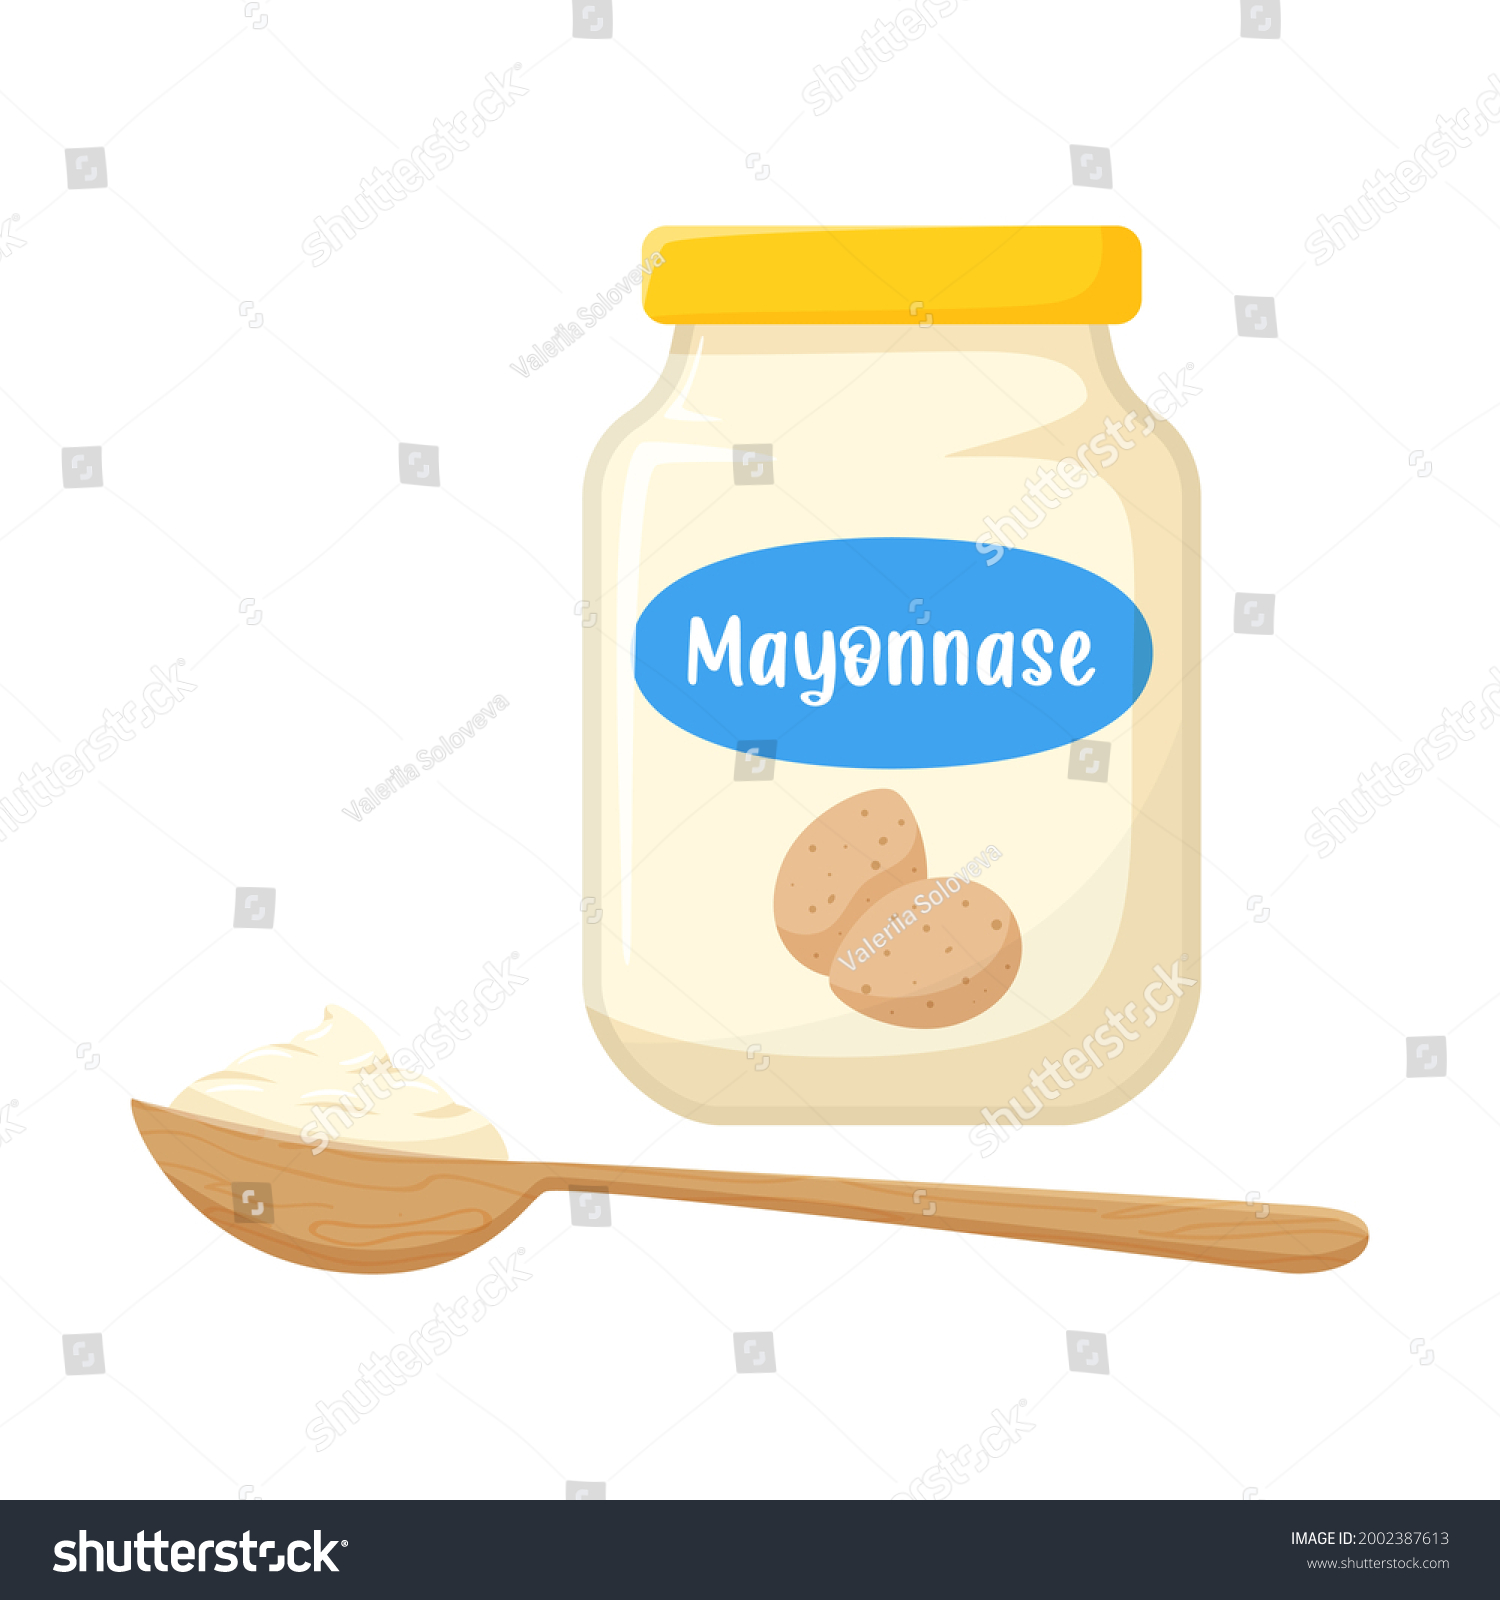 Mayonnaise Sauce Glass Jar Quail Eggs Stock Vector (Royalty Free ...